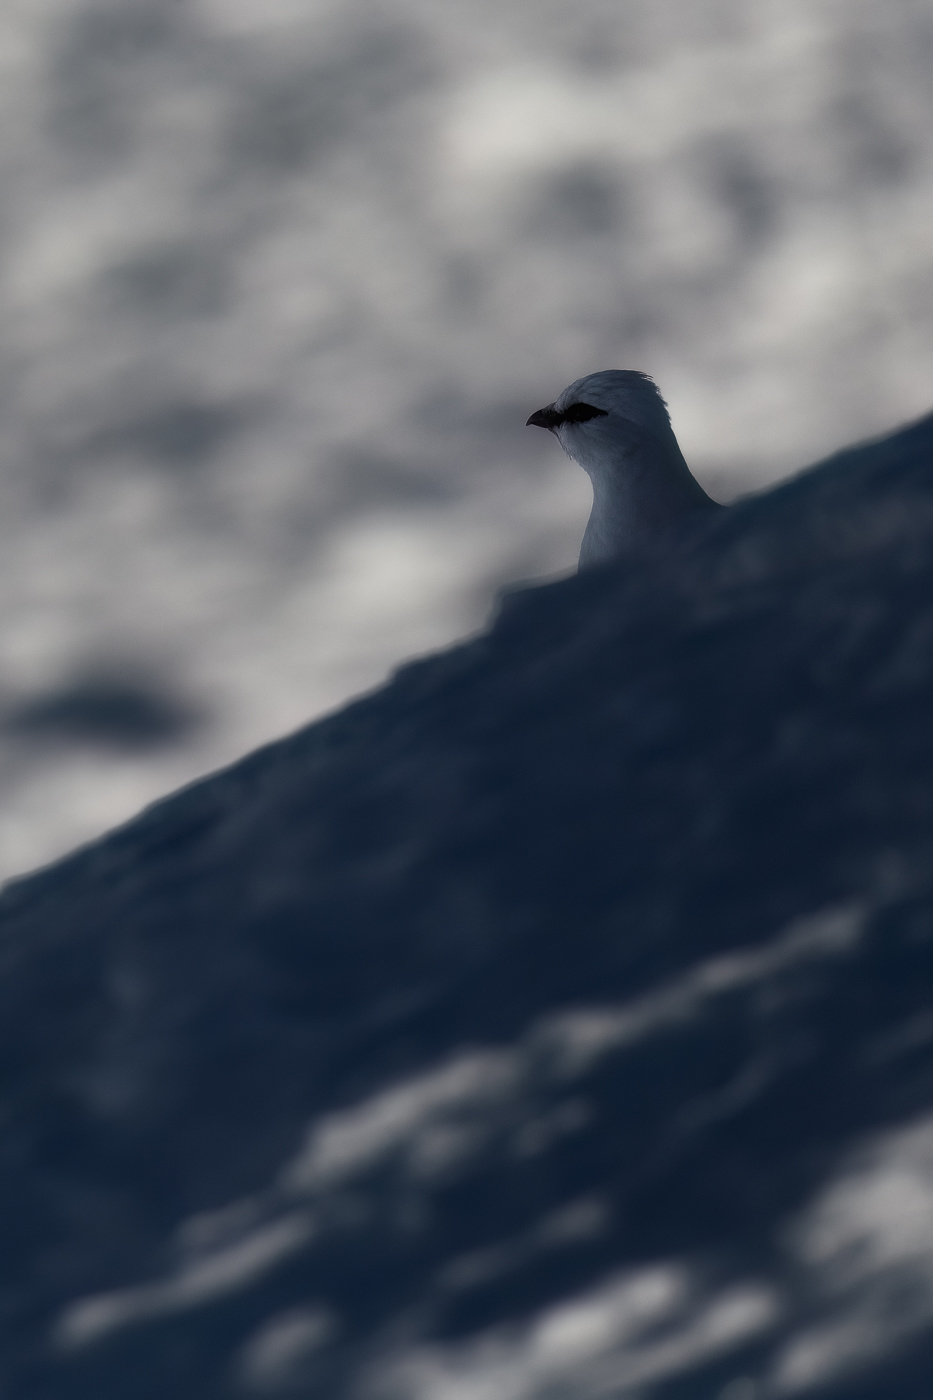 L’albedo della neve rivela la sagoma inconfondibile di una pernice bianca (Lagopus muta) nascosta nell’ombra. Parco Naturale Tre Cime, Dolomiti di Sesto, Italia.